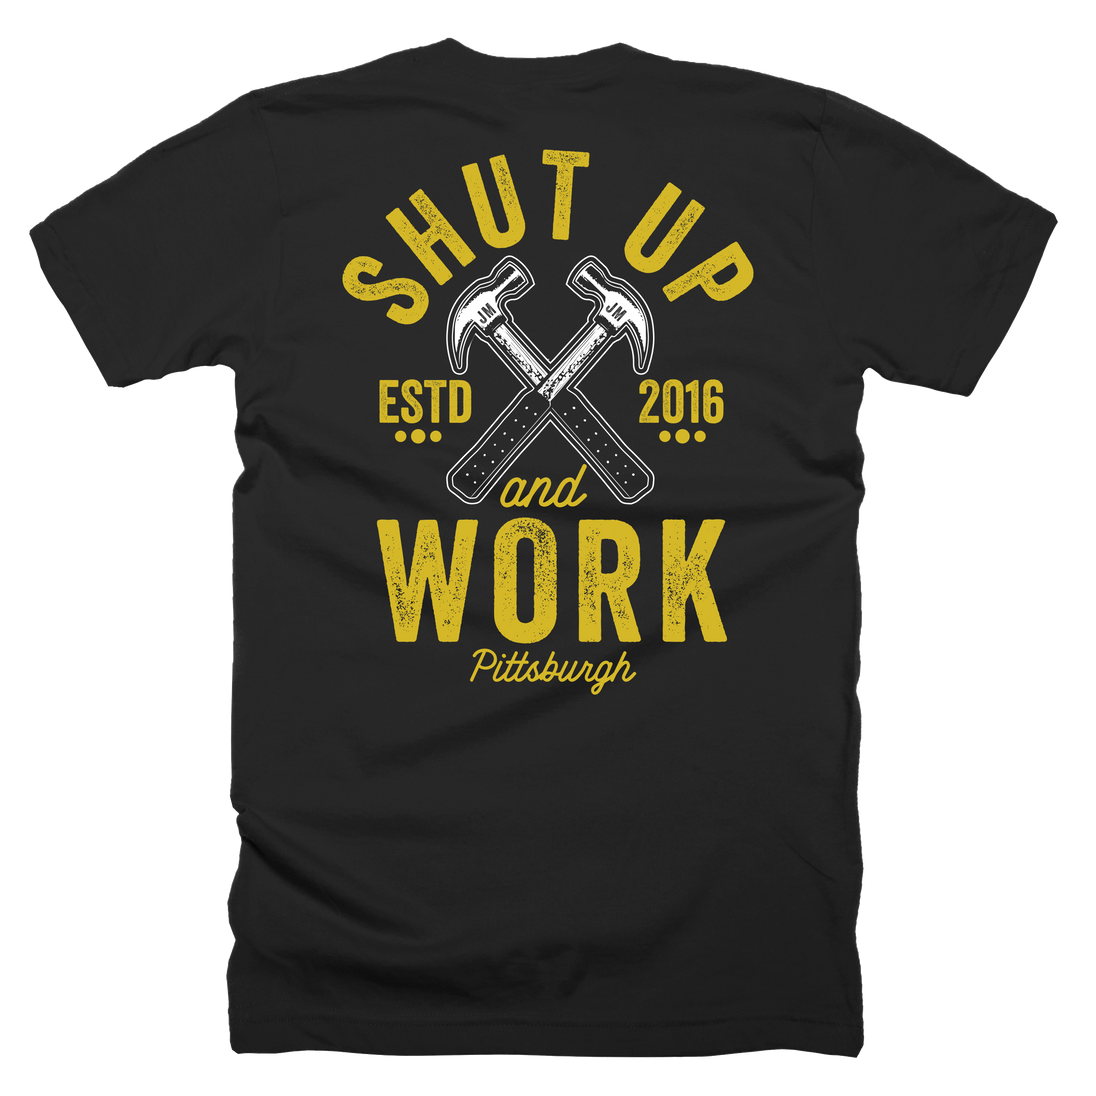 Shut Up and Work T-Shirt - John Malecki Store